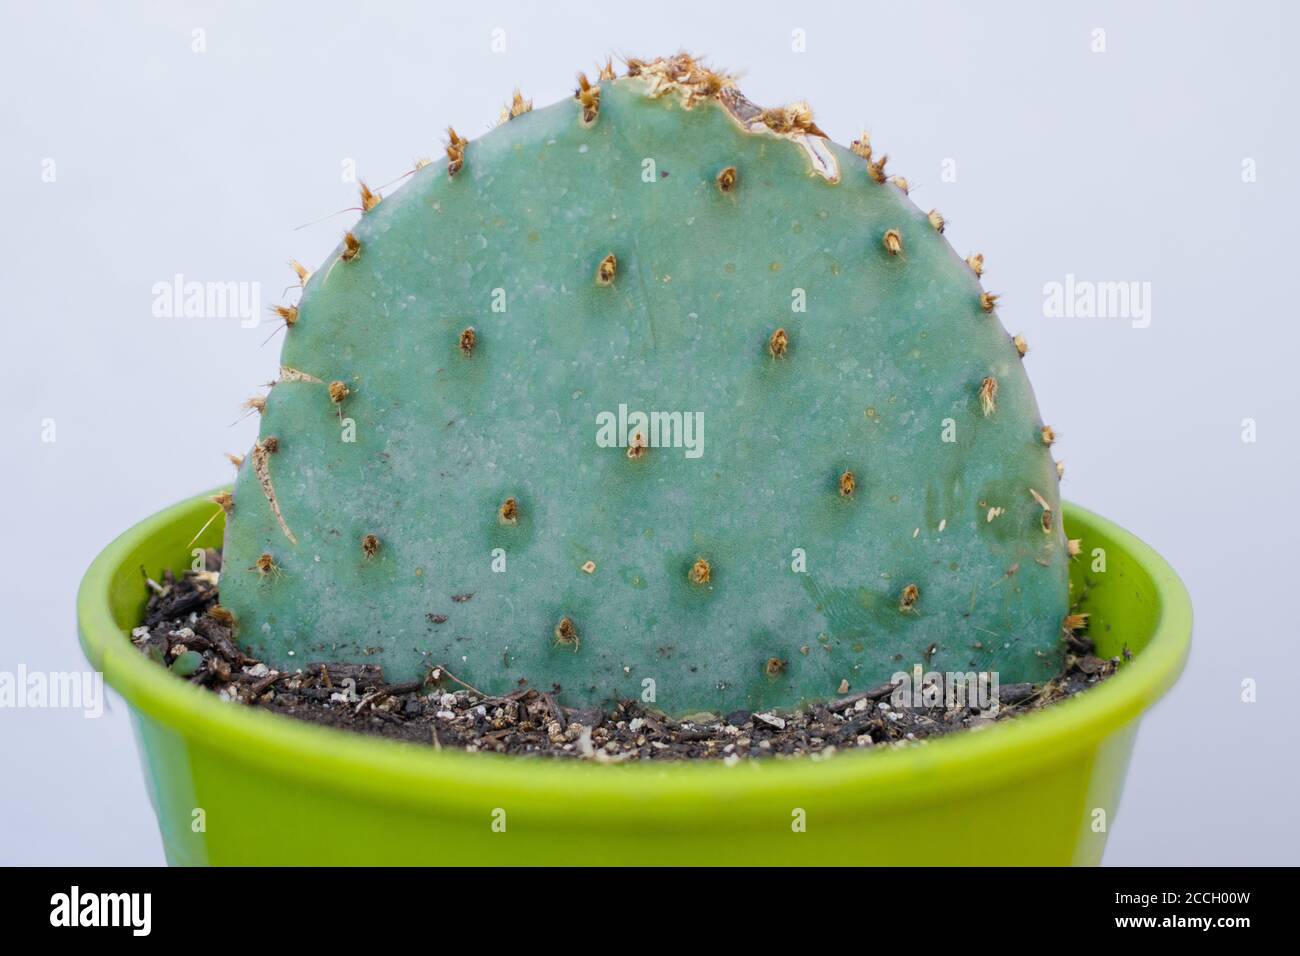 Green pot of Opuntia Aciculata cactus Stock Photo